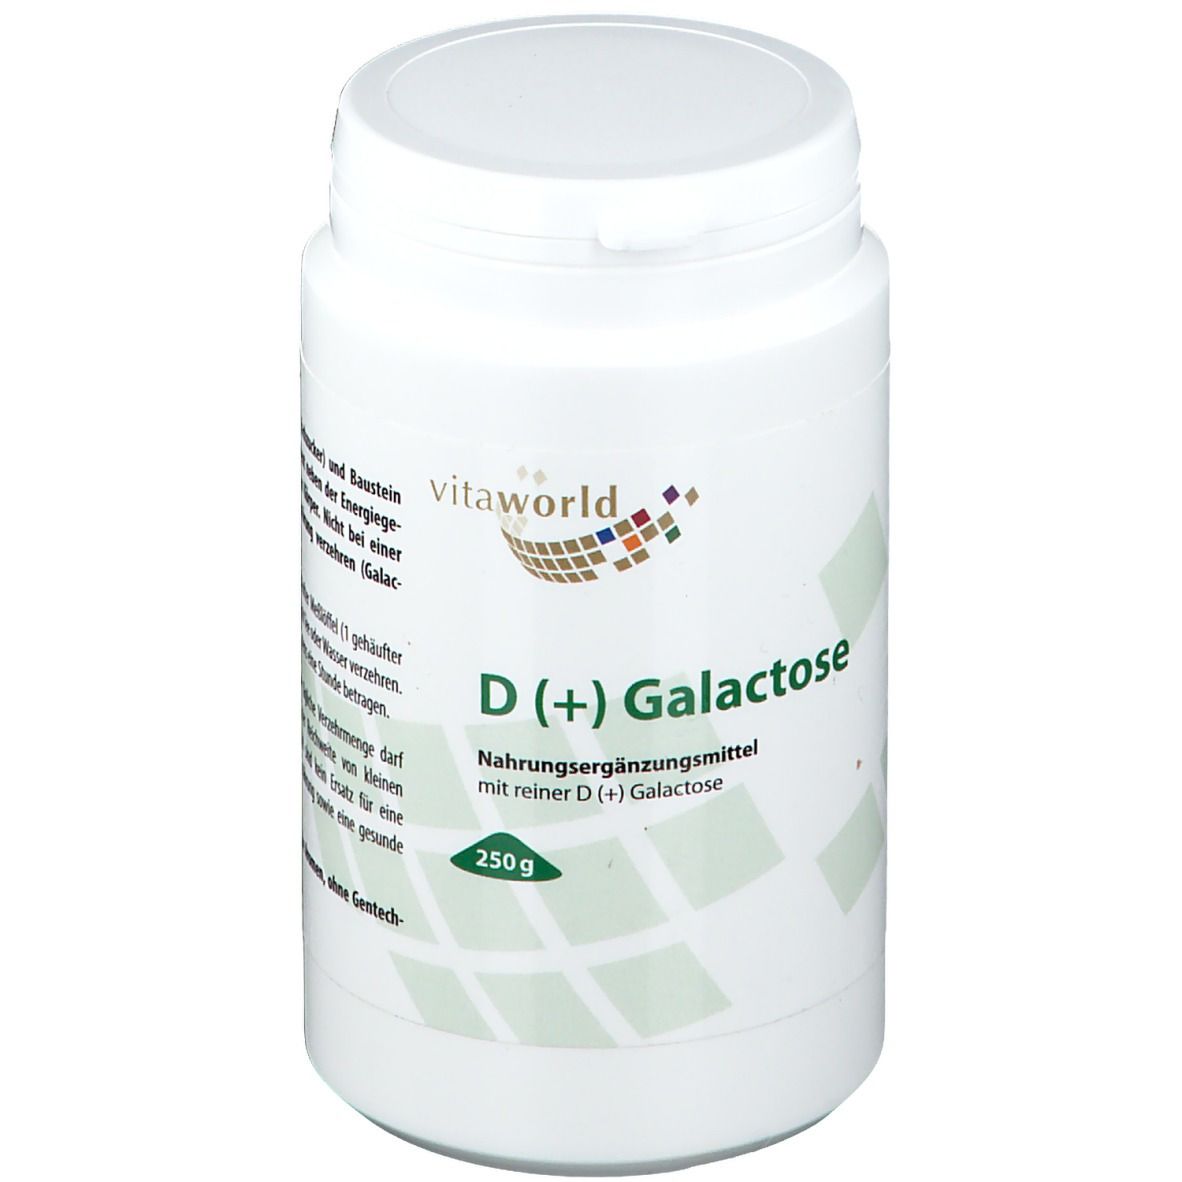 D (+) Galactose